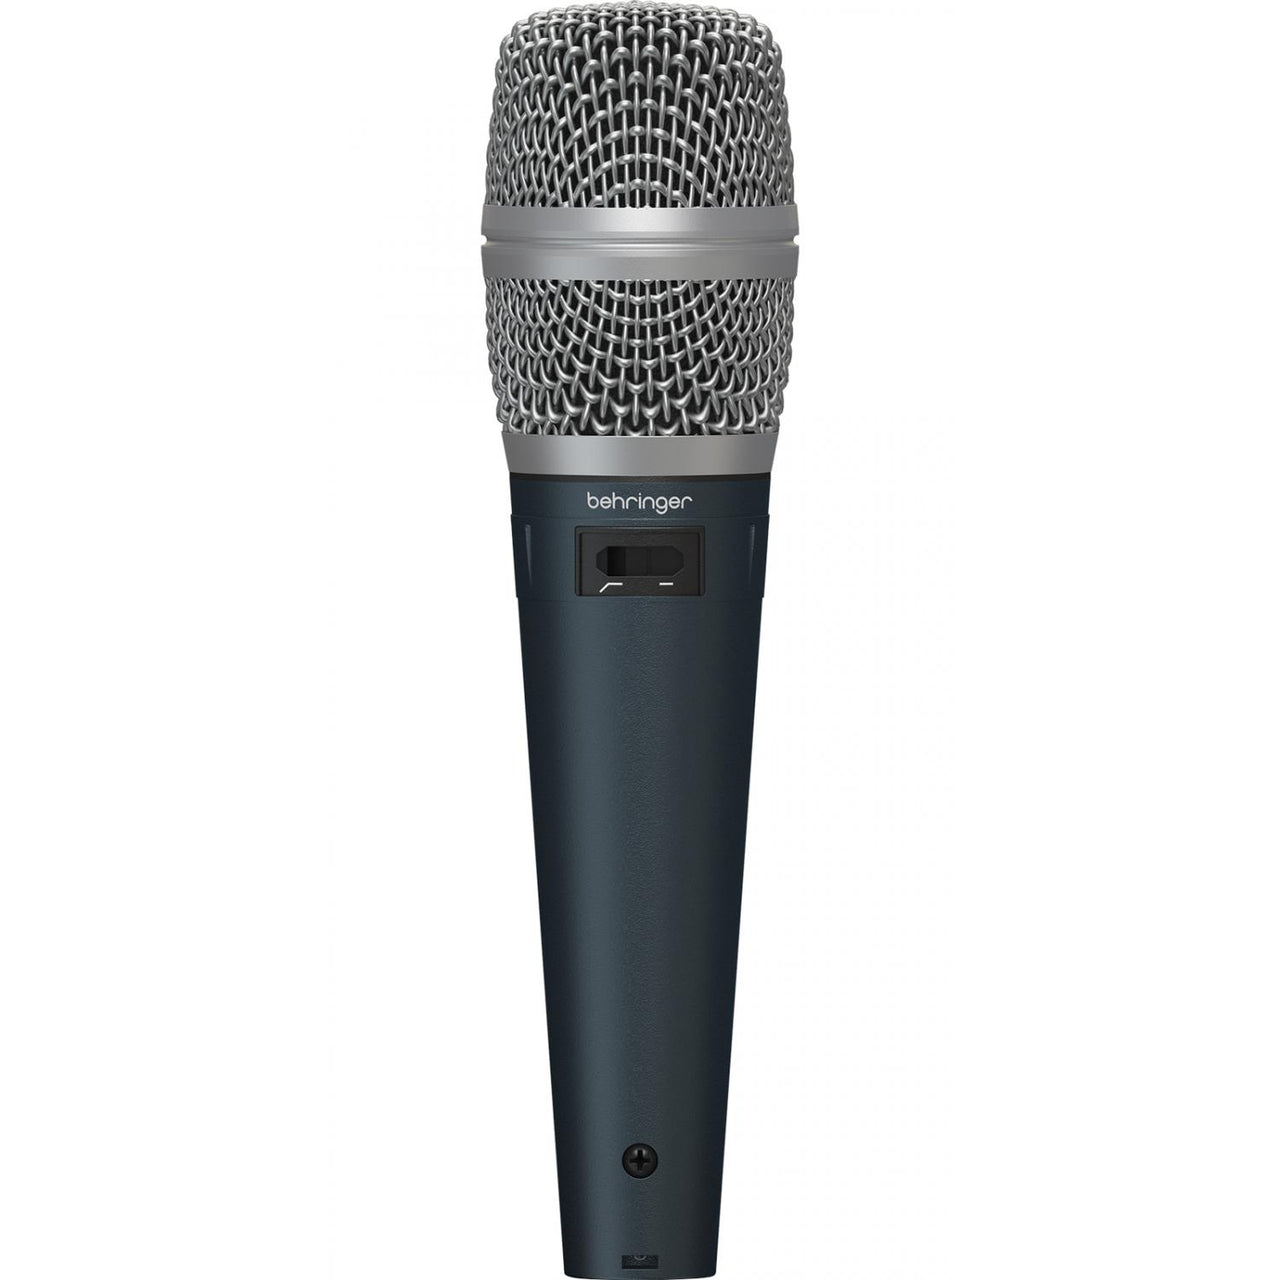 Microfono Behringer Sb 78a de condensador